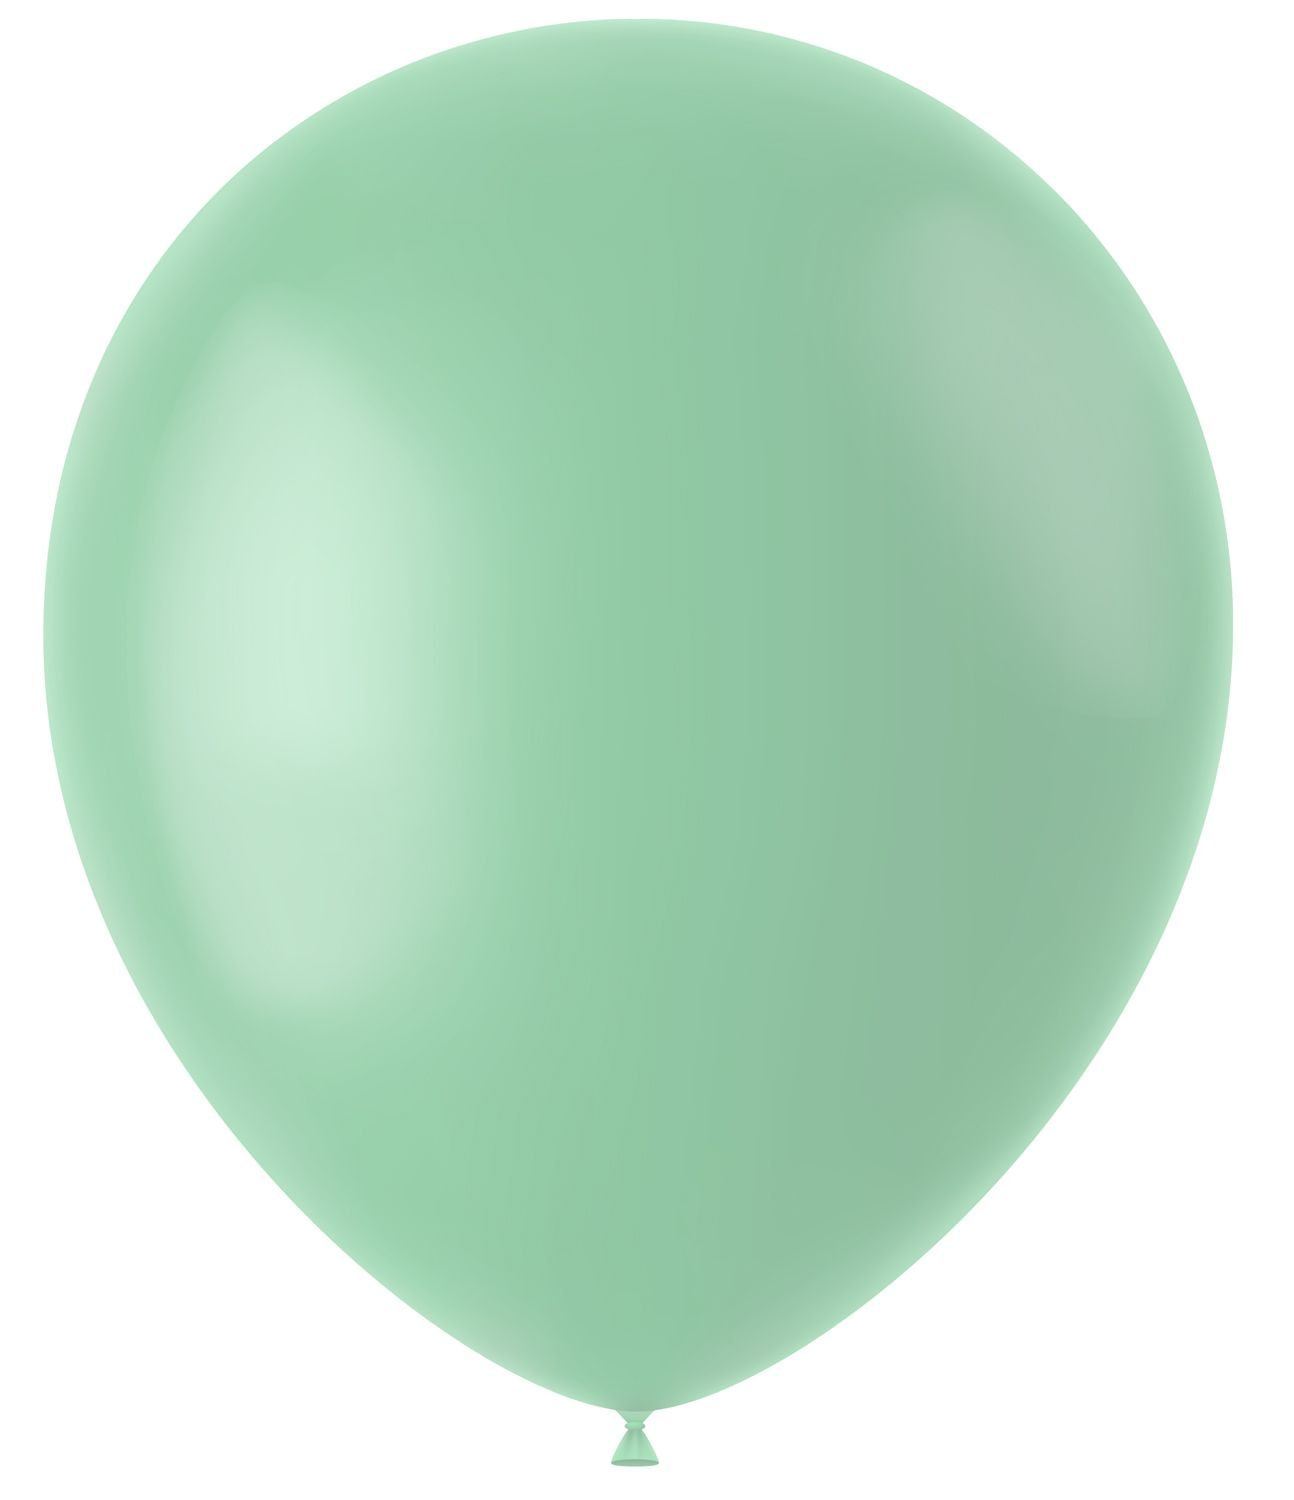 Pistache groene ballonnen matte kleur